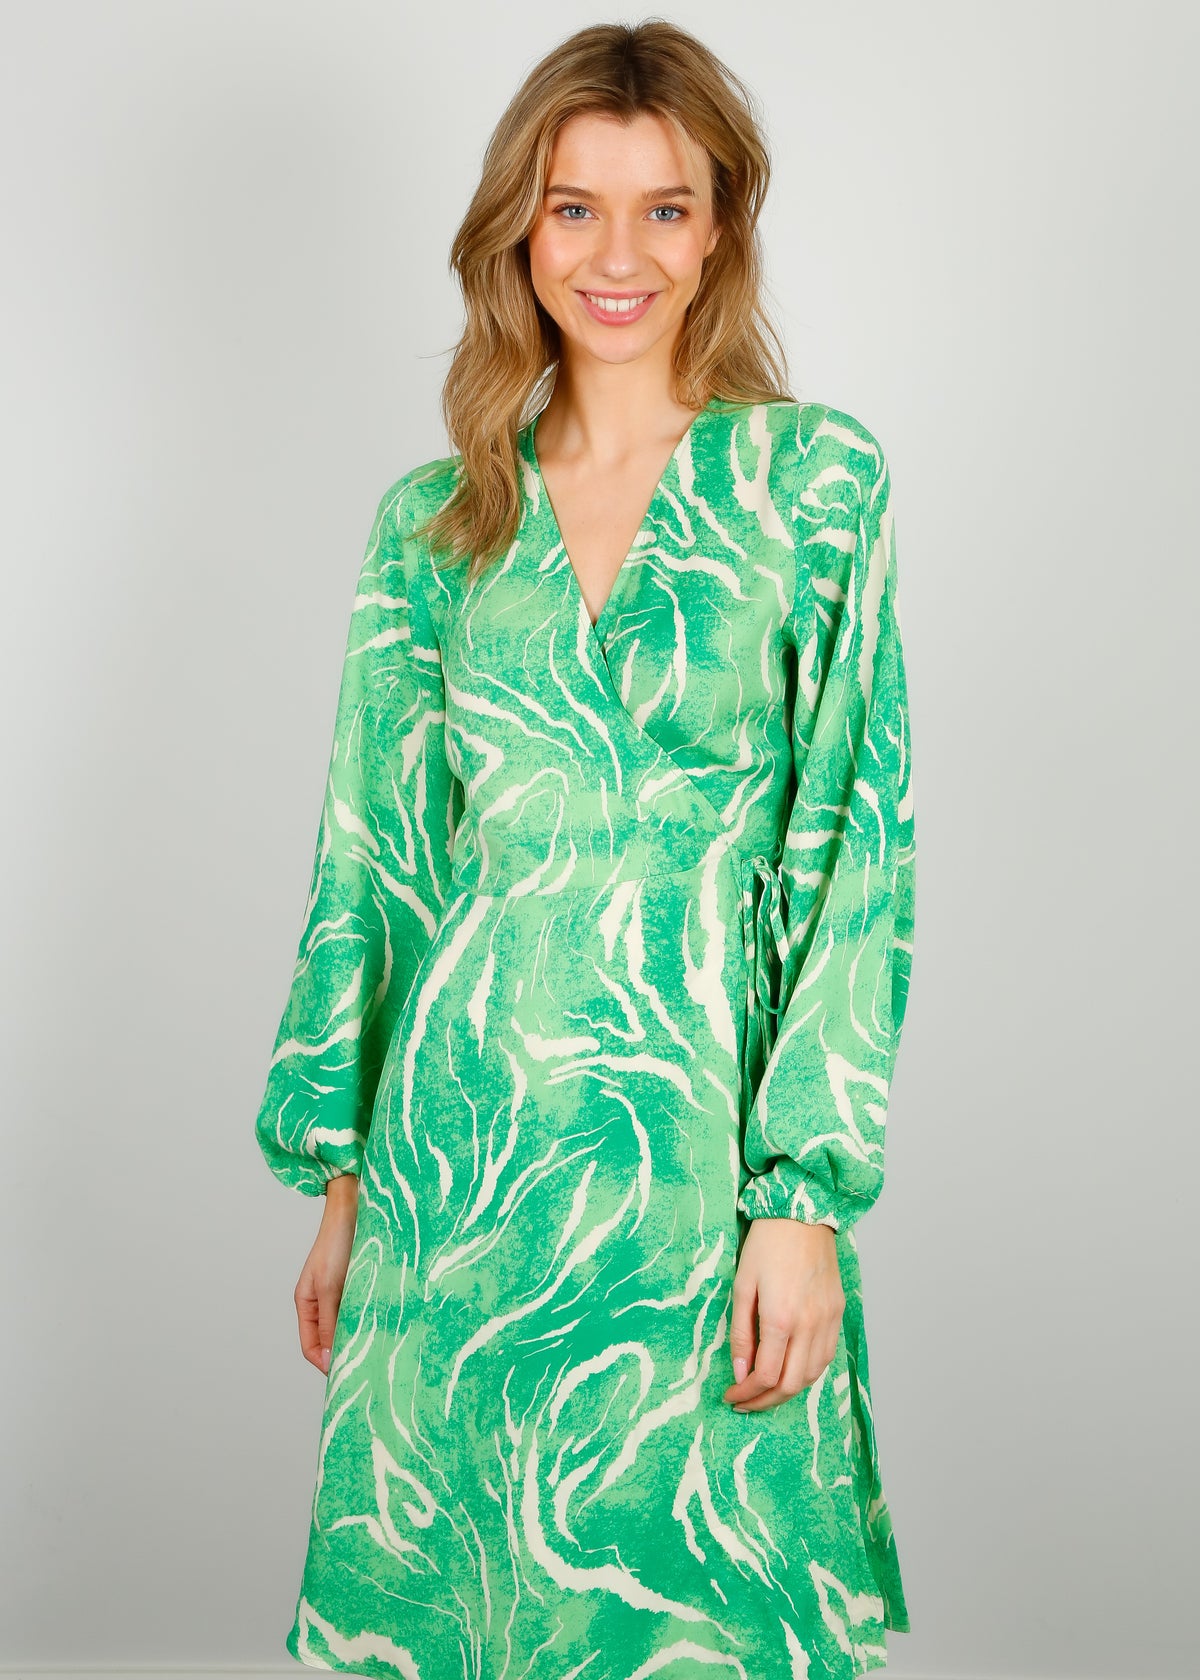 SLF Fiola Wrap Dress in Absinthe Green